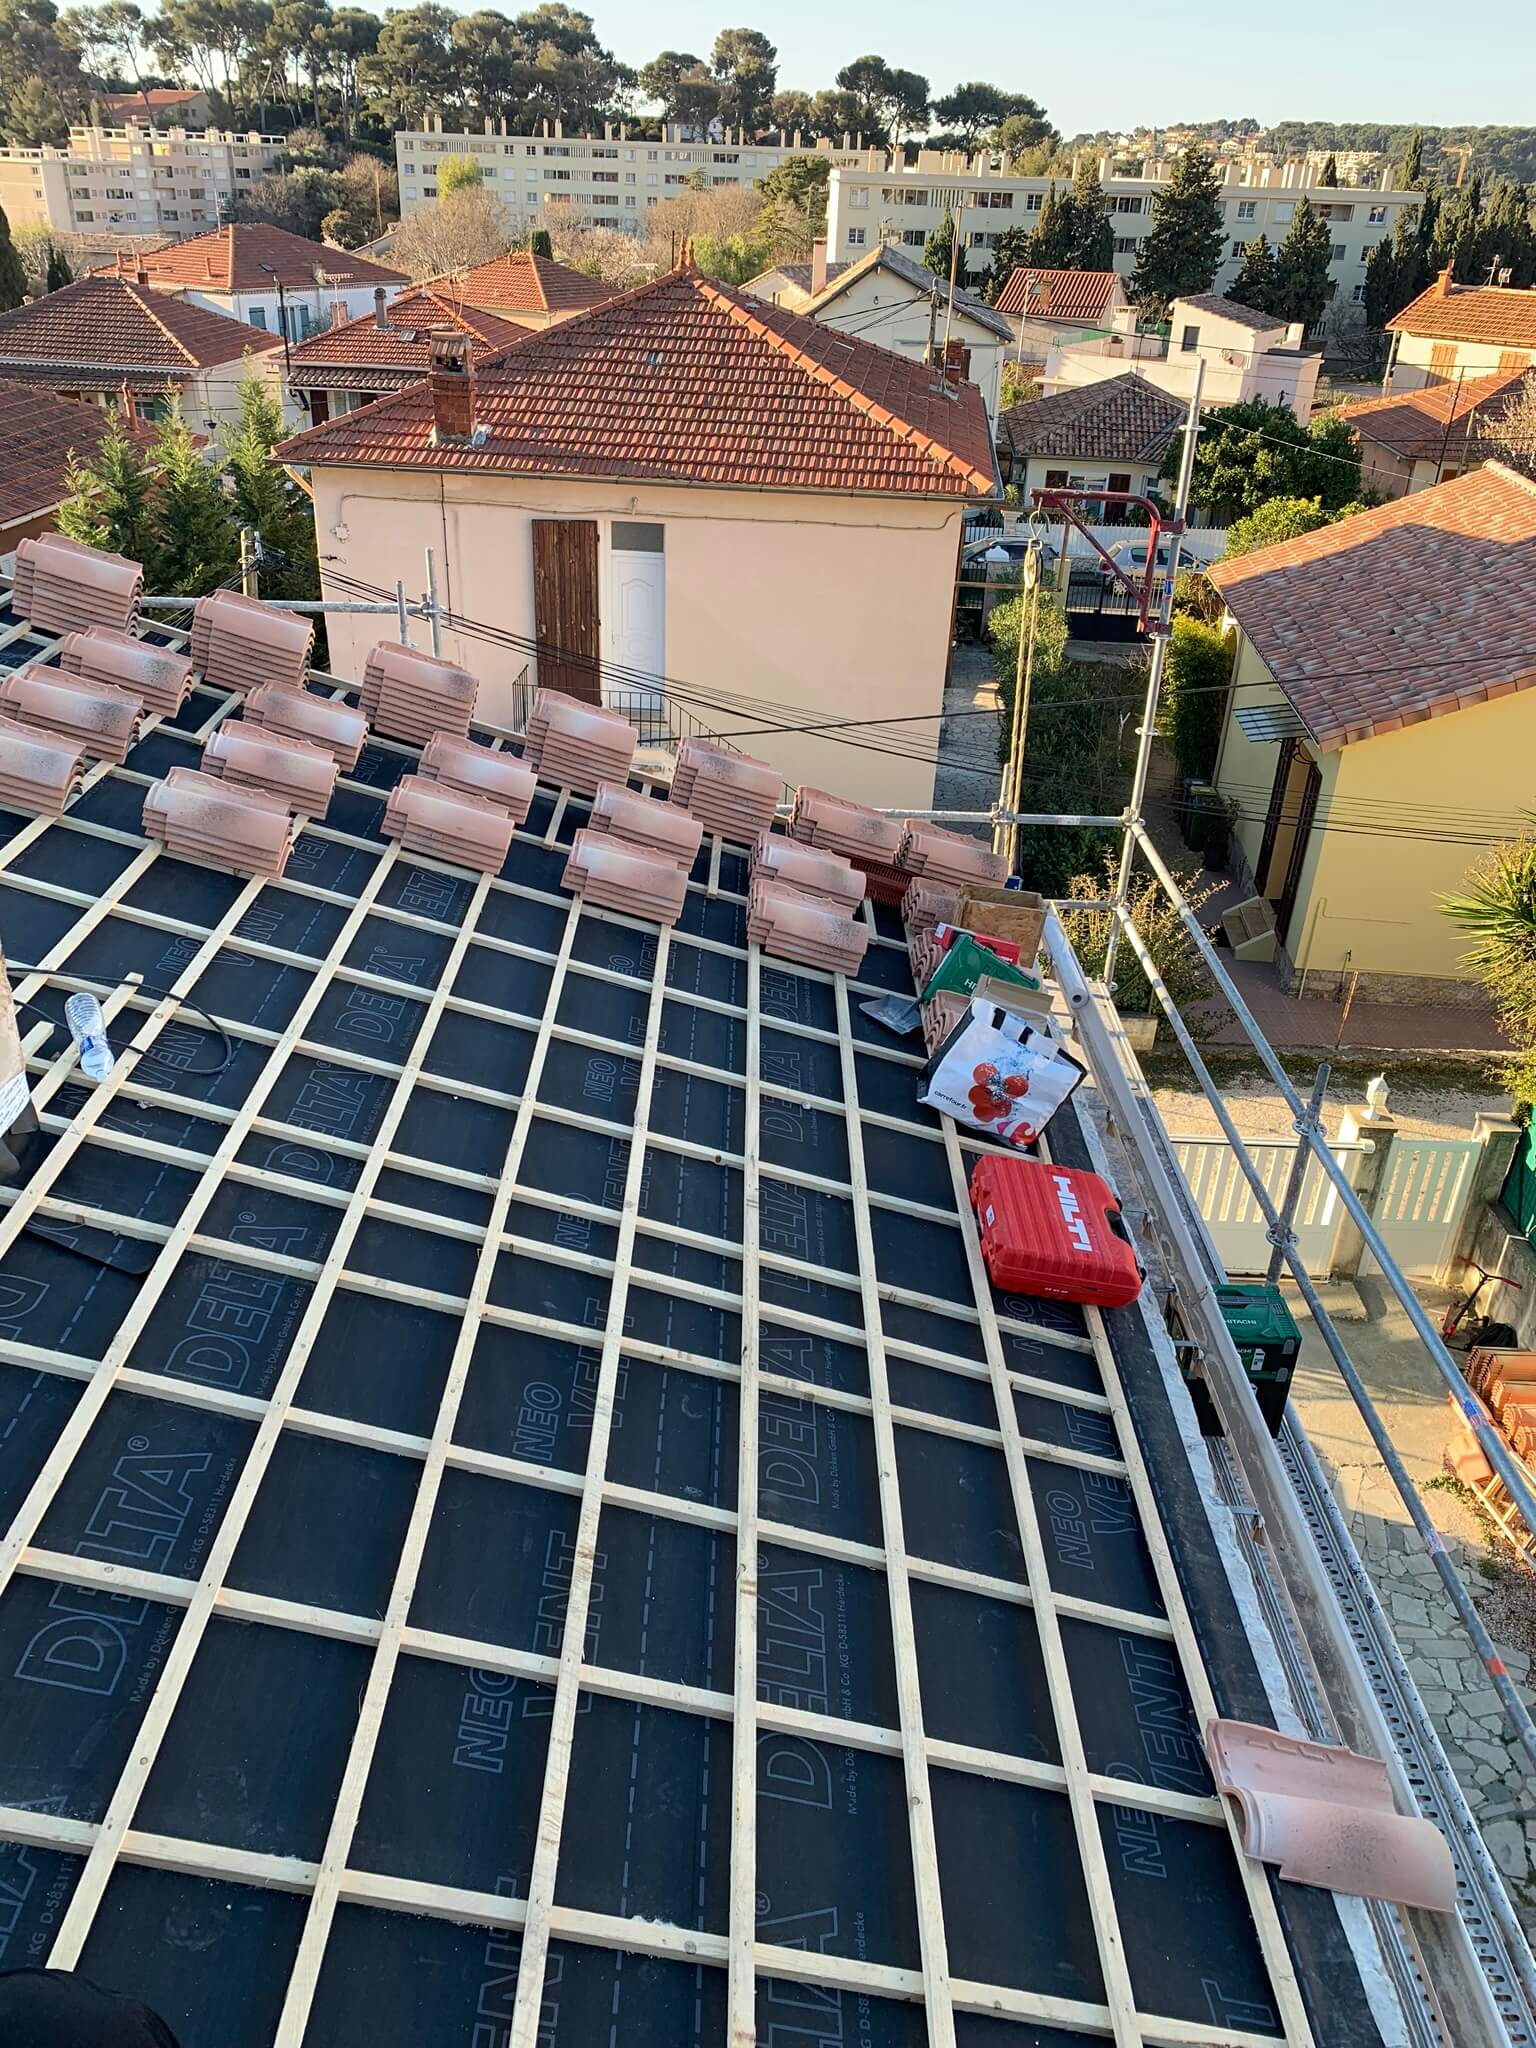 Rénovation de charpente en bois pour la rénovation de votre toiture par Stanegri Toiture, artisan Couvreur Toiture Zinguerie à Toulon